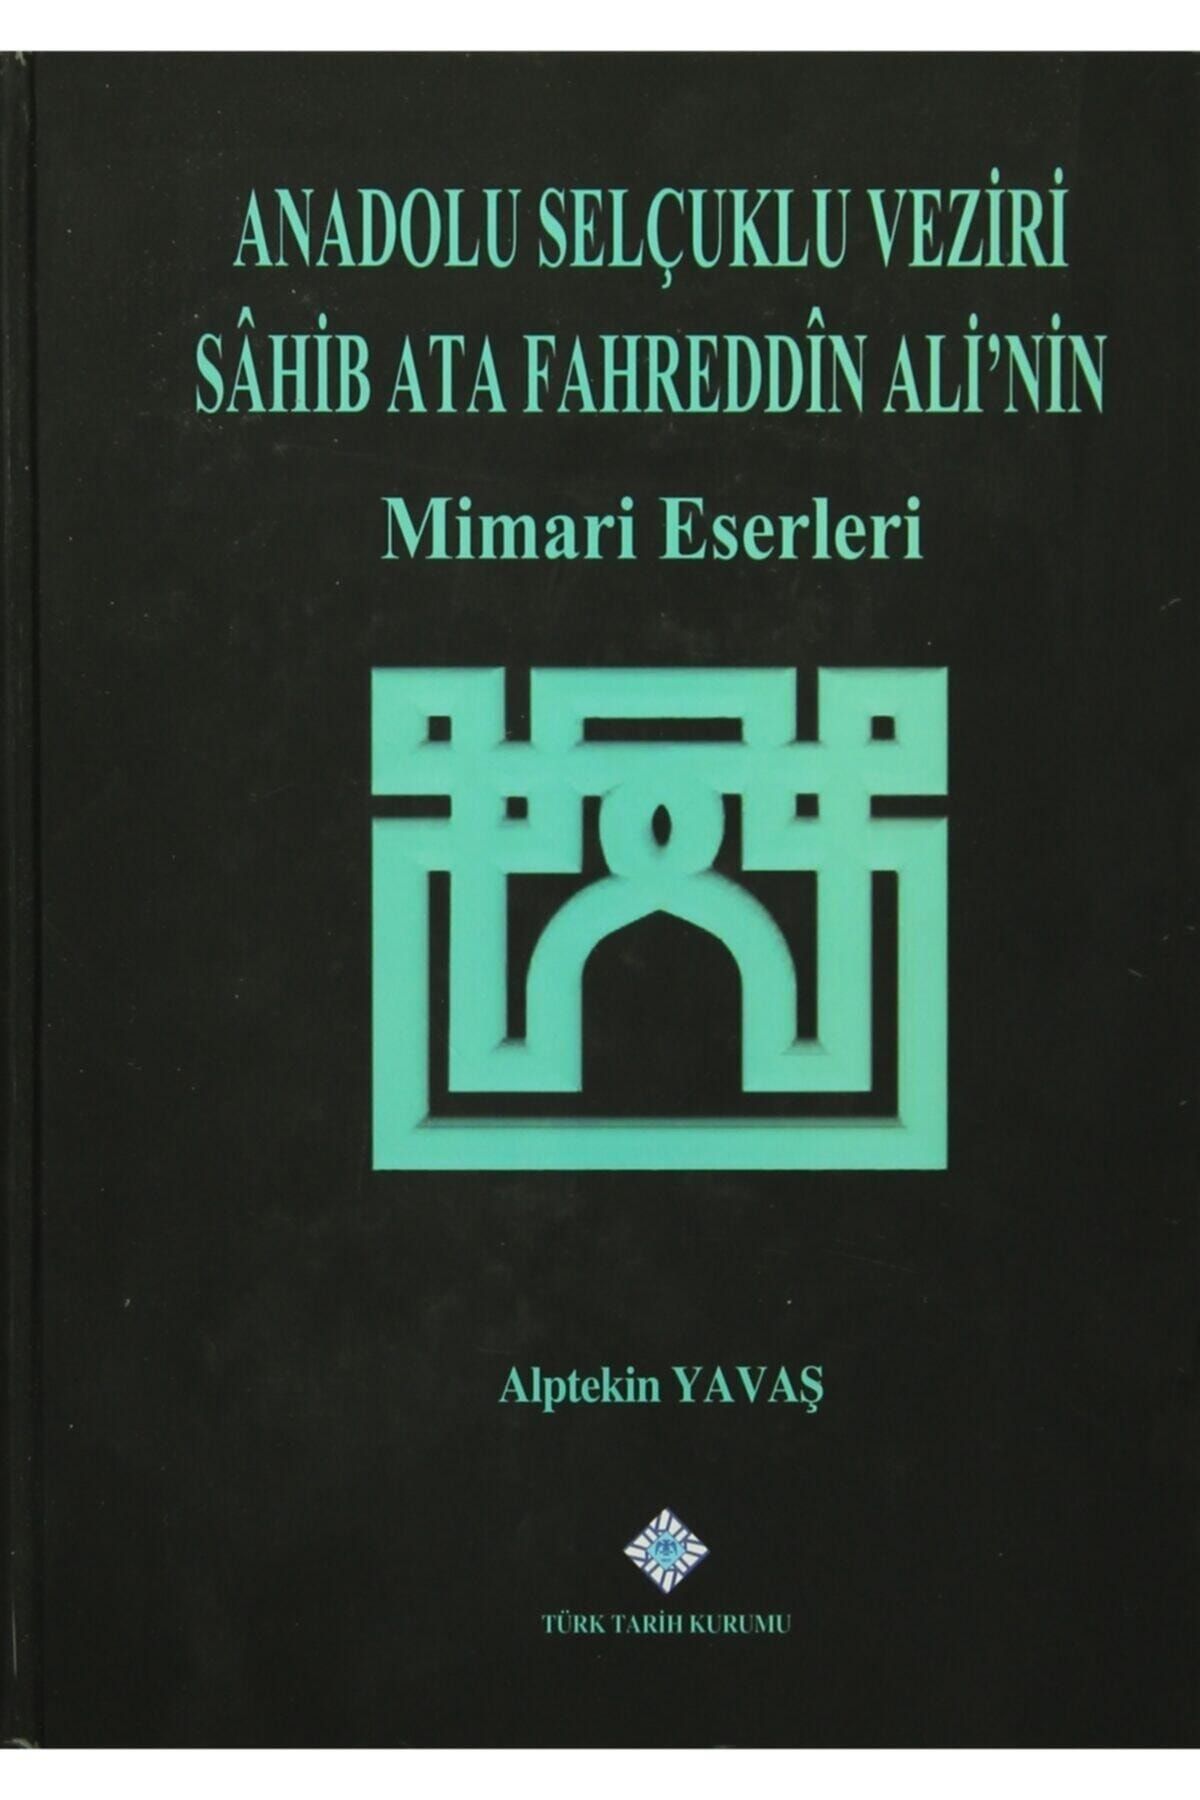 Türk Tarih Kurumu Yayınları Anadolu Selçuklu Veziri Sahib Ata Fahreddin Ali'nin Mimari Eserleri